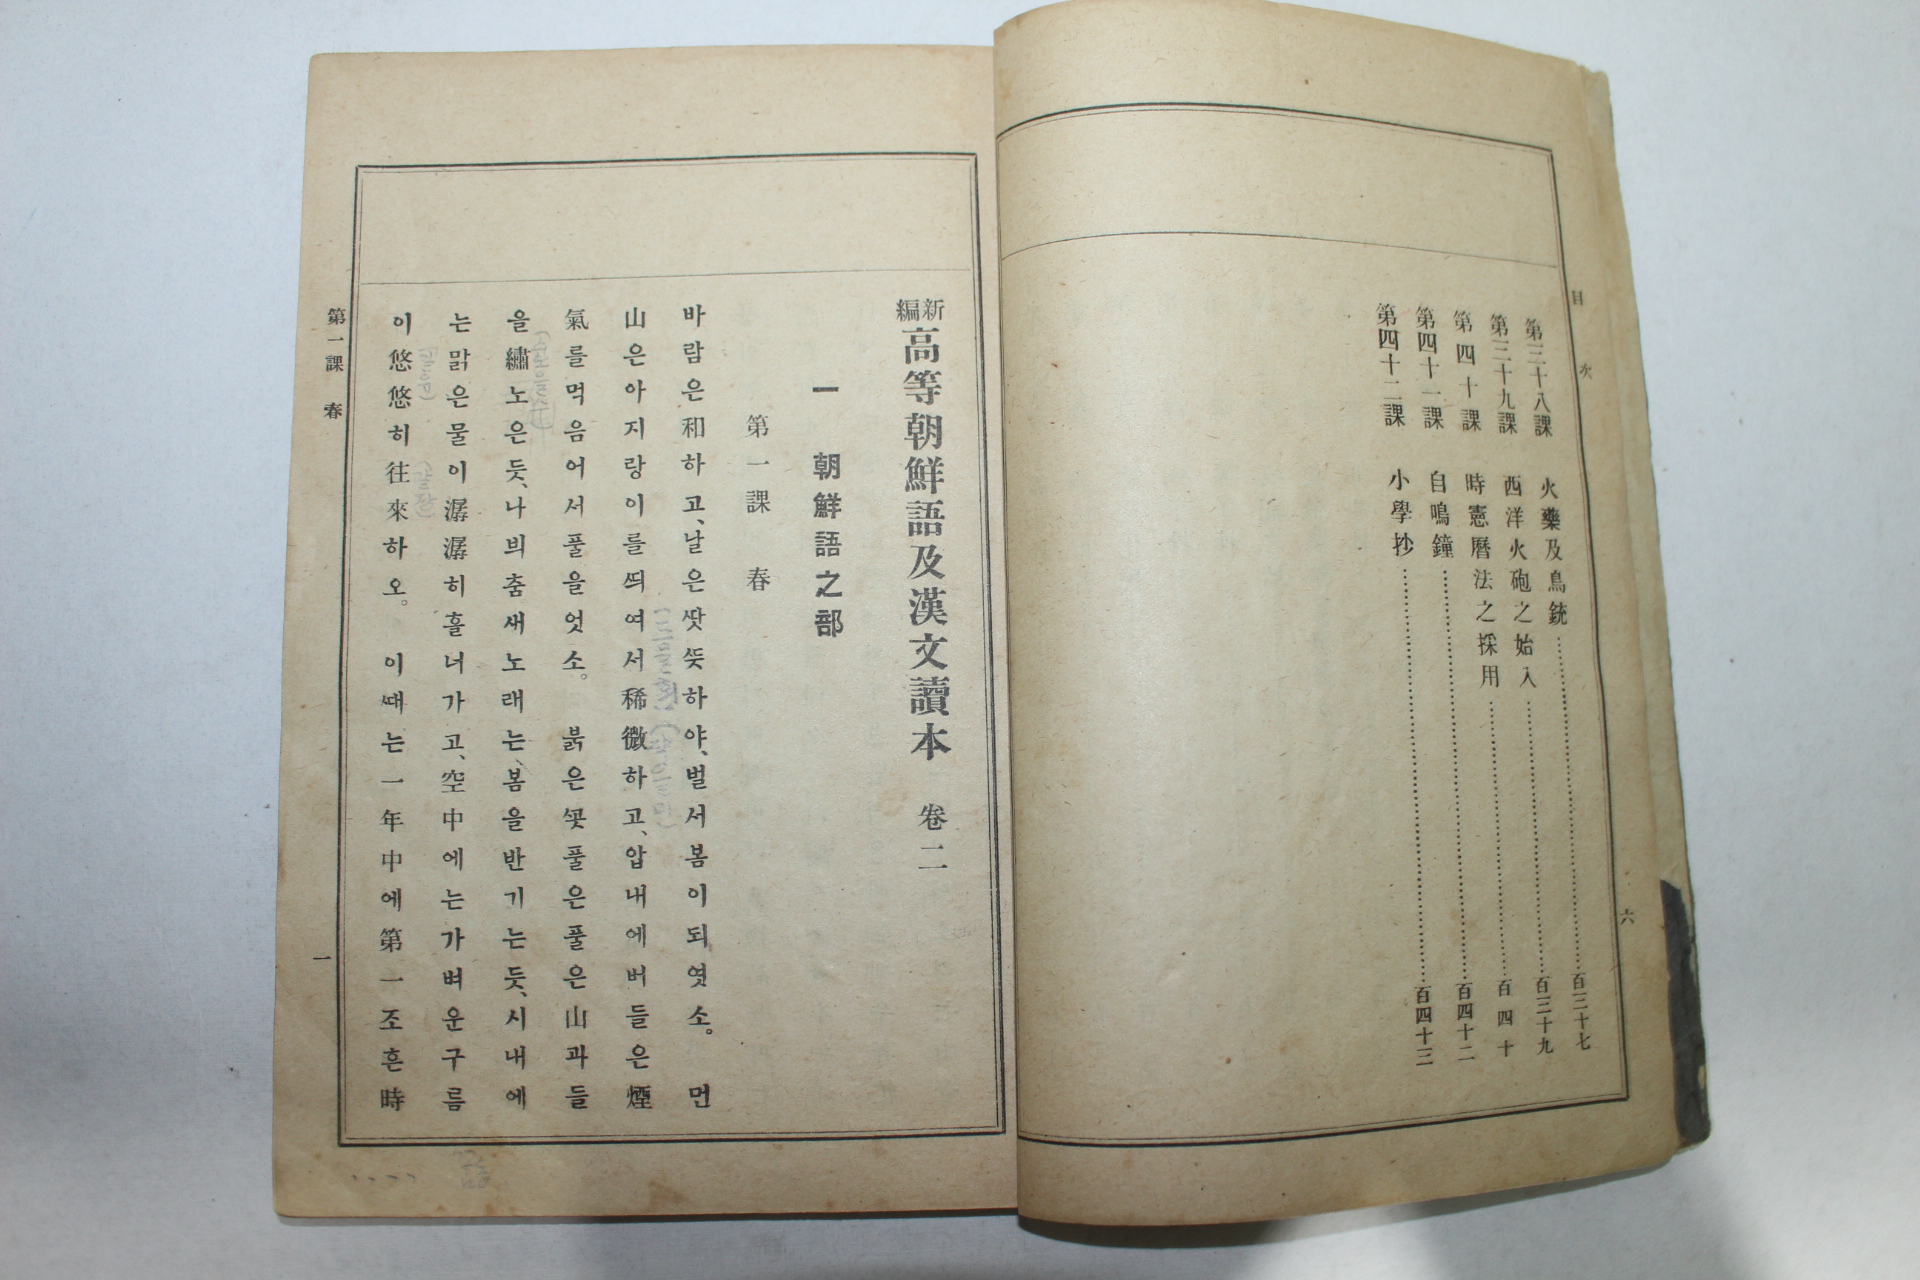 1924년(대정13년) 경성간행 신편고등조선어급한문독본 권2